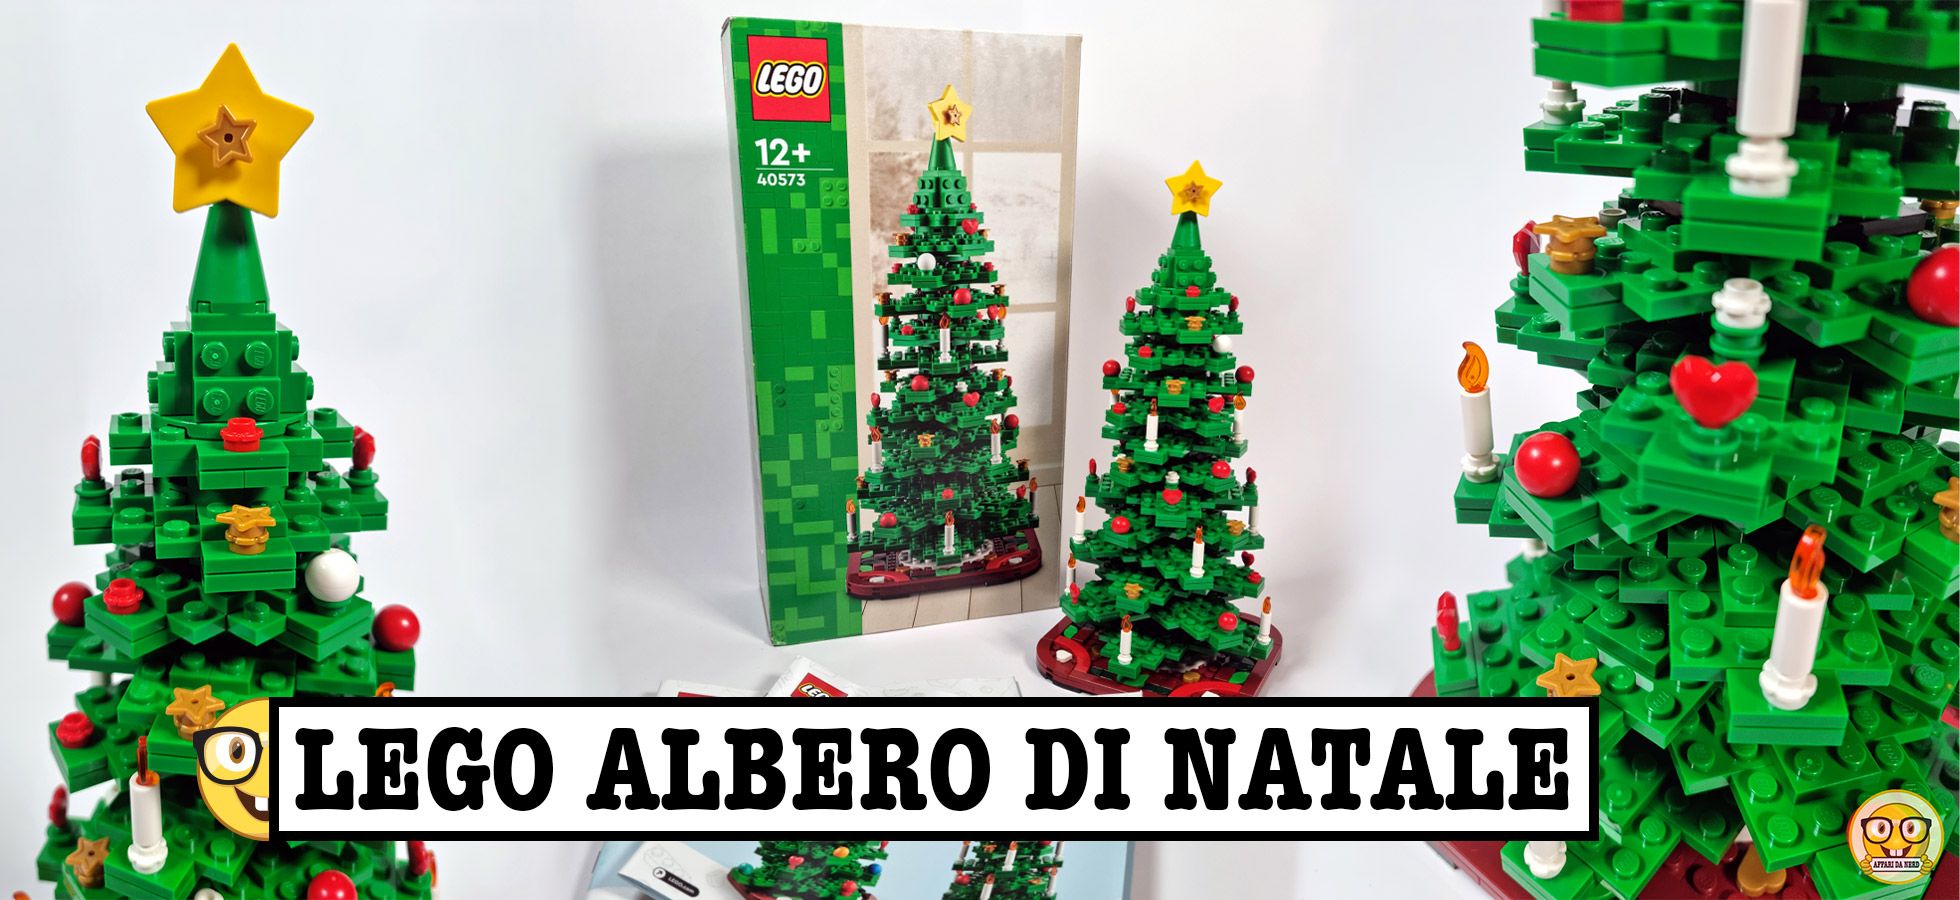 Recensione LEGO Albero di Natale (40573)